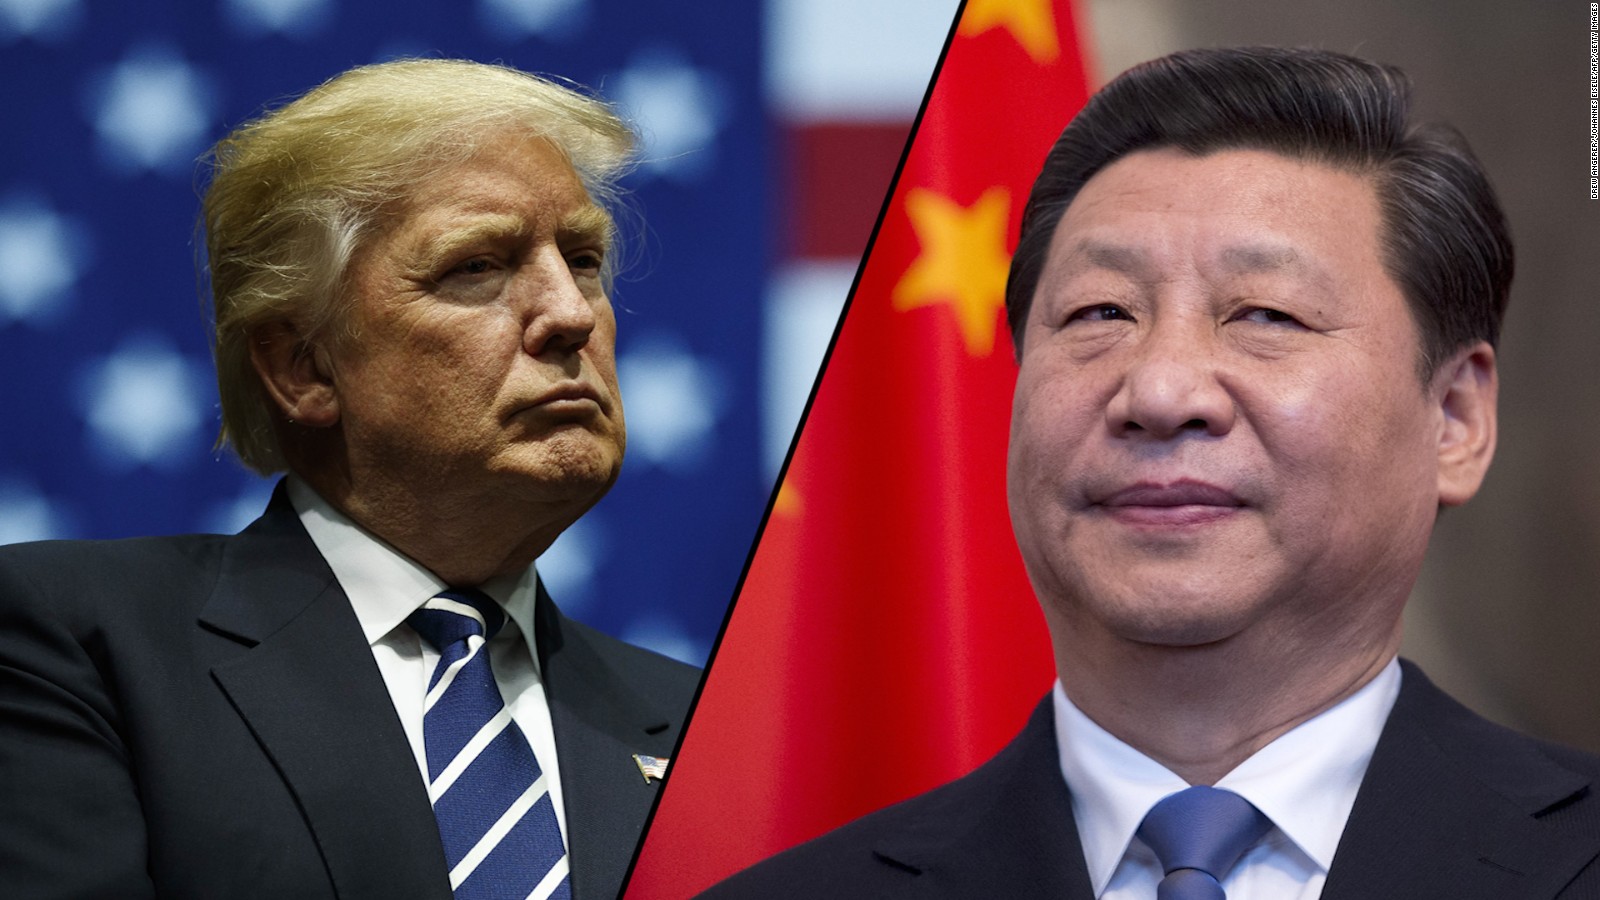 La “guerra commerciale” tra Cina e USA: catene globali del valore, crisi e sviluppo ineguale e combinato